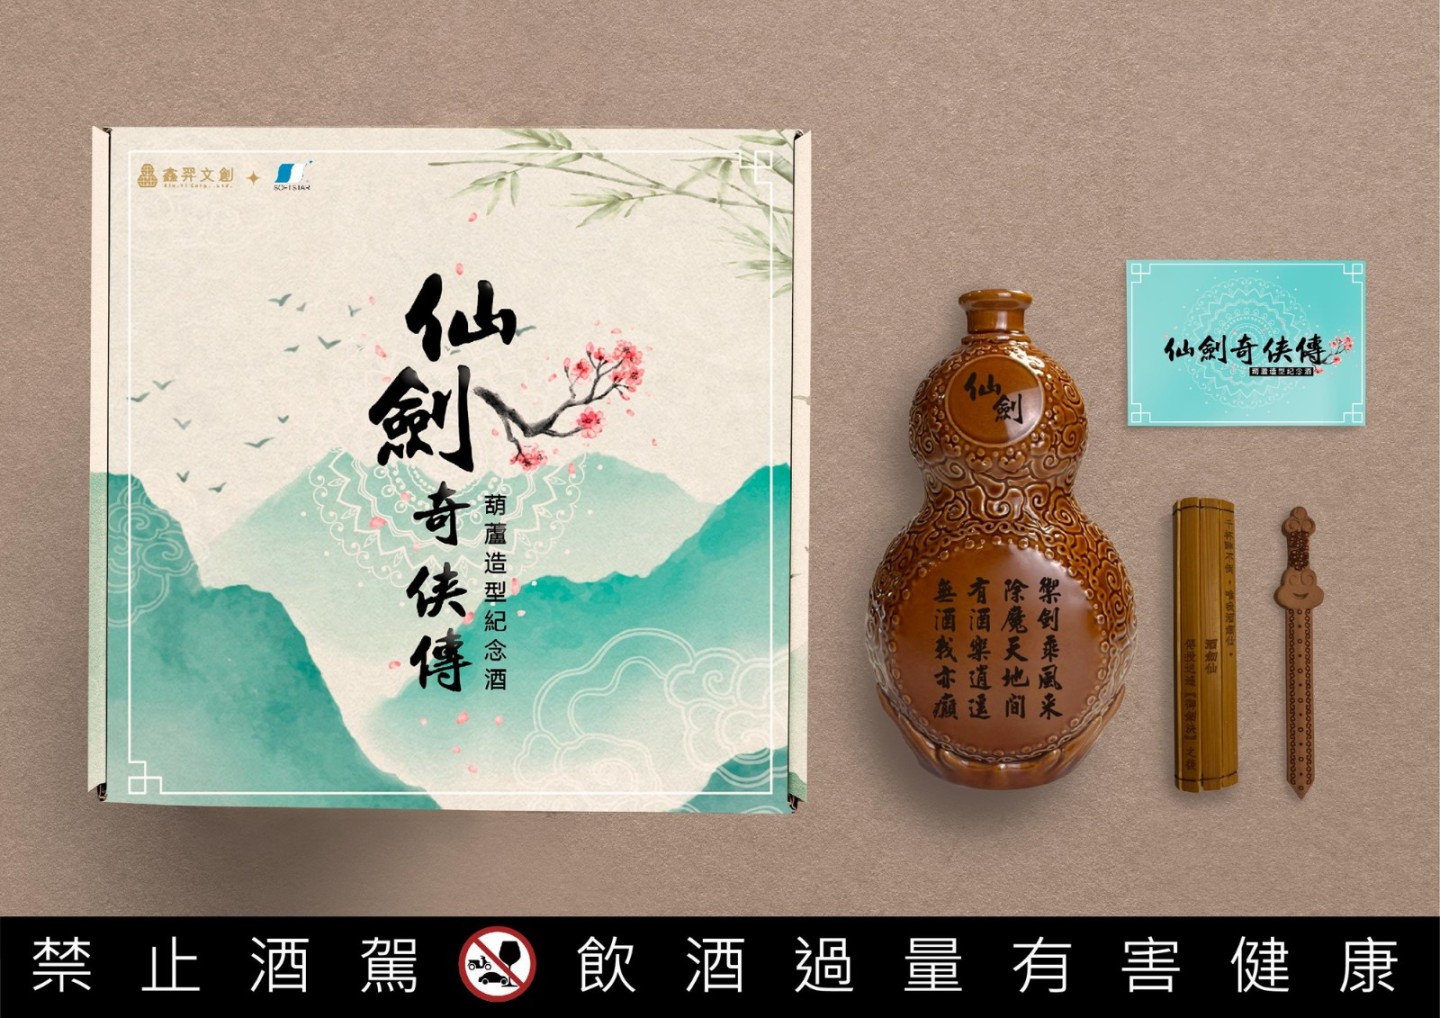 《仙剑奇侠传》推限量版"葫芦"造型纪念酒  8月31日开始预购-第1张